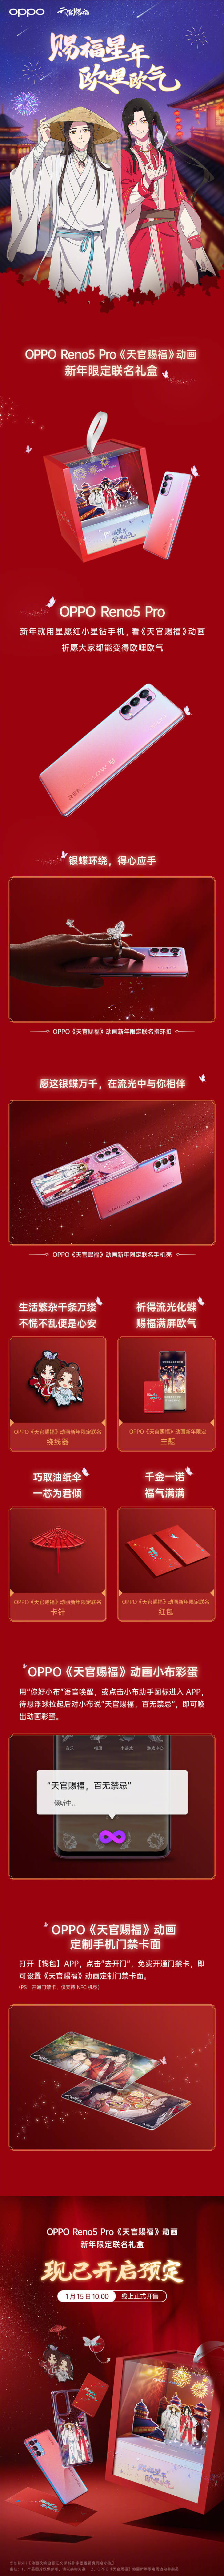 OPPO携手《天官赐福》推出联名礼盒开售倒计时3天_手机搜狐网